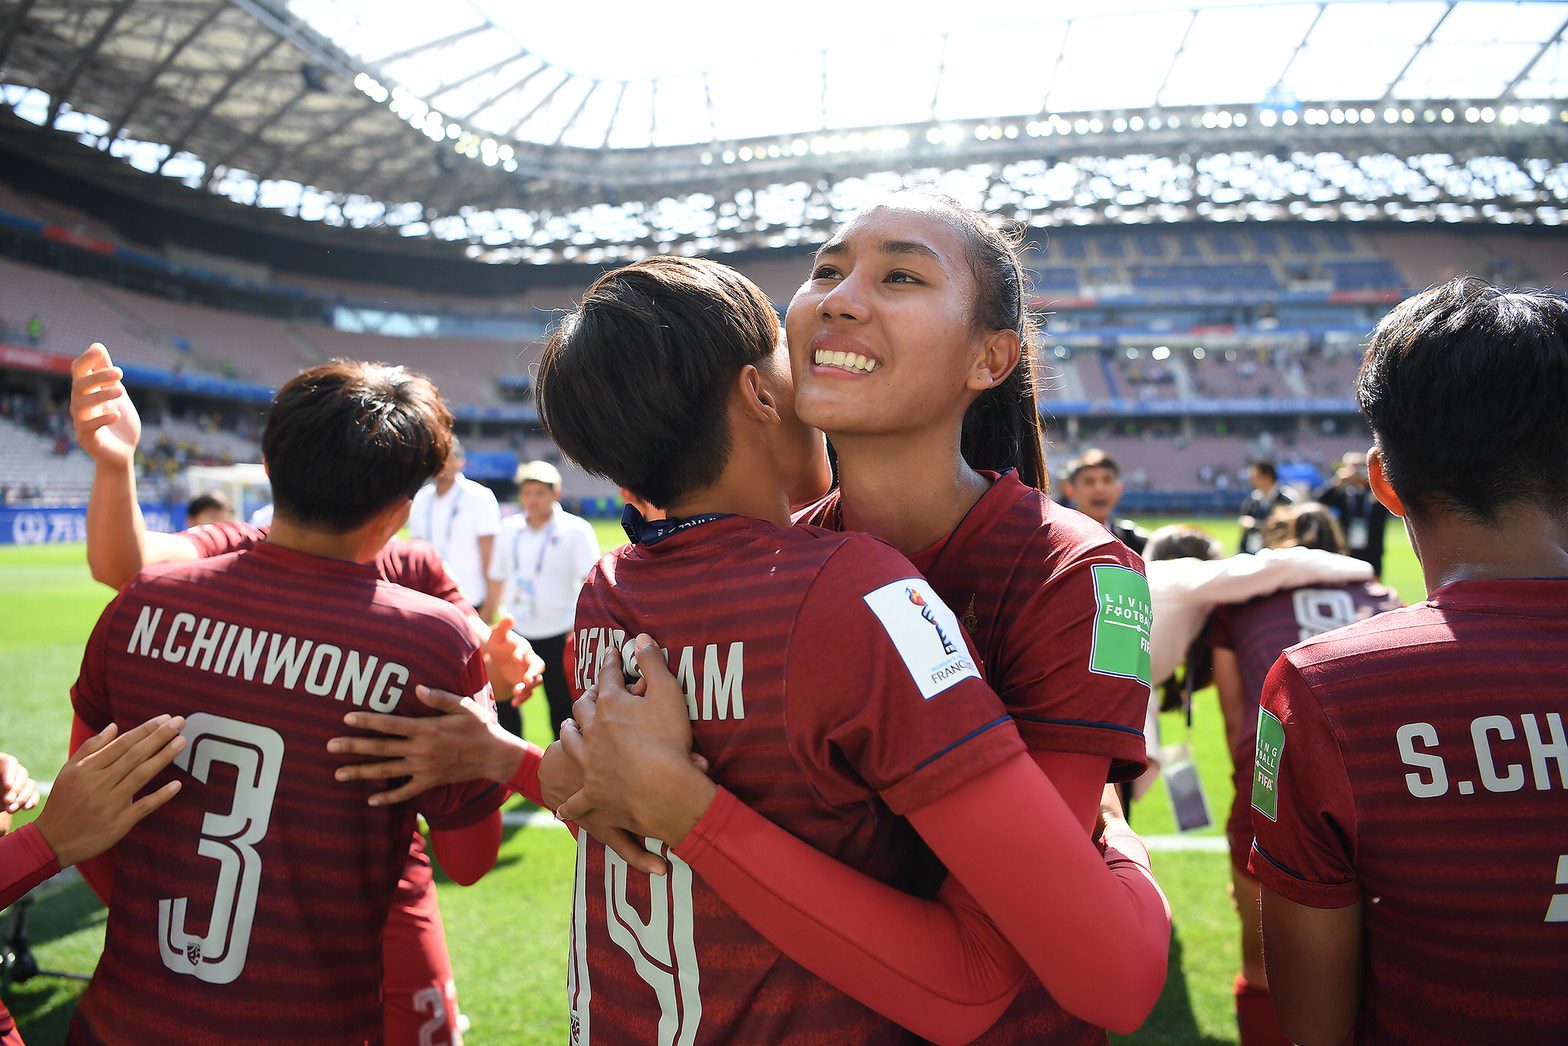 โกอินเตอร์! สโมสรจีนคว้า สองแข้ง ฟุตบอลหญิงทีมชาติไทย ธนีกานต์ – ณัฐกานต์ ลุยศึก วีเมนส์ ลีก วัน